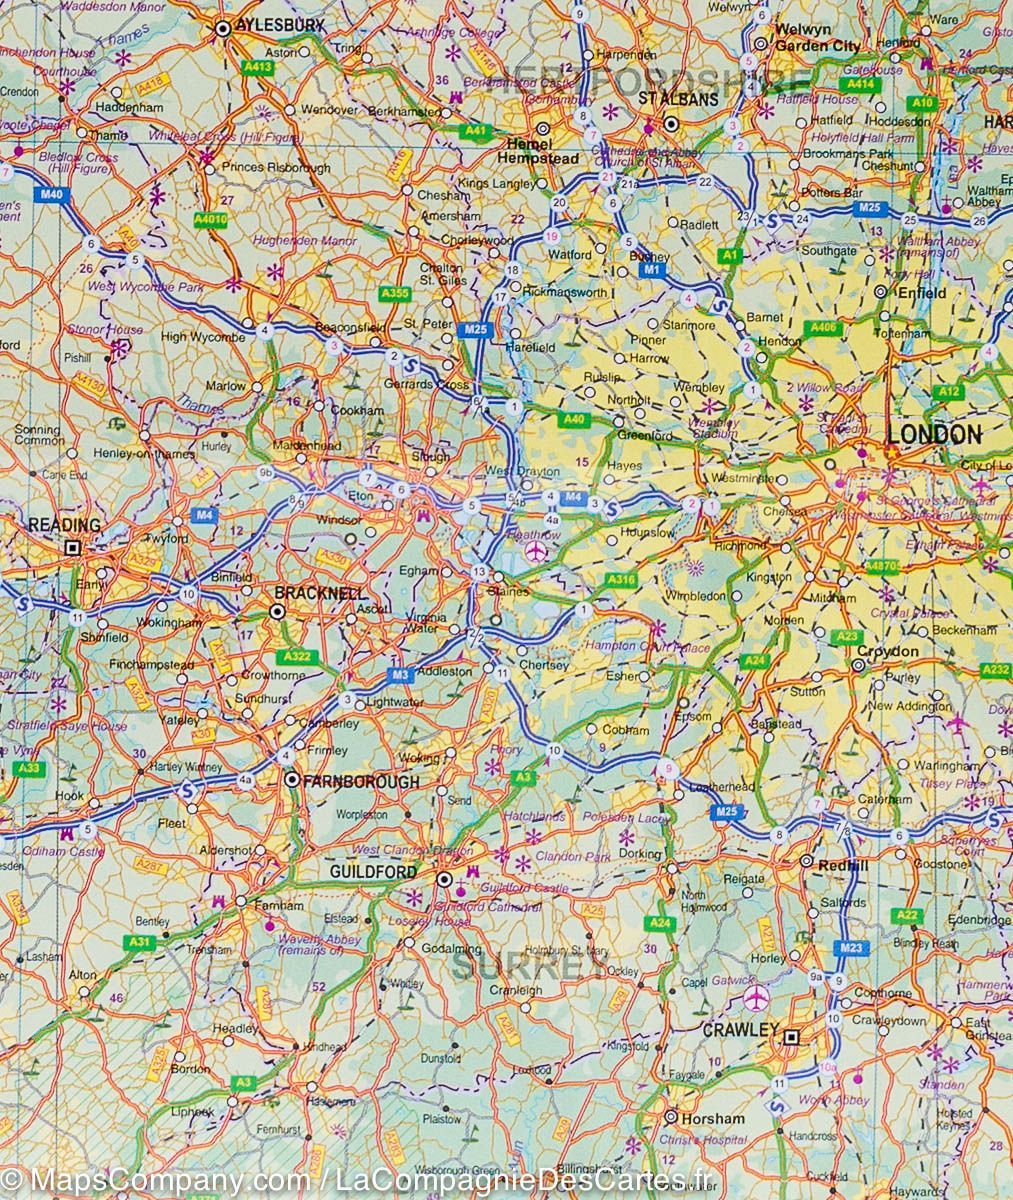 Plan de Londres & Carte du sud-est de l'Angleterre | ITM